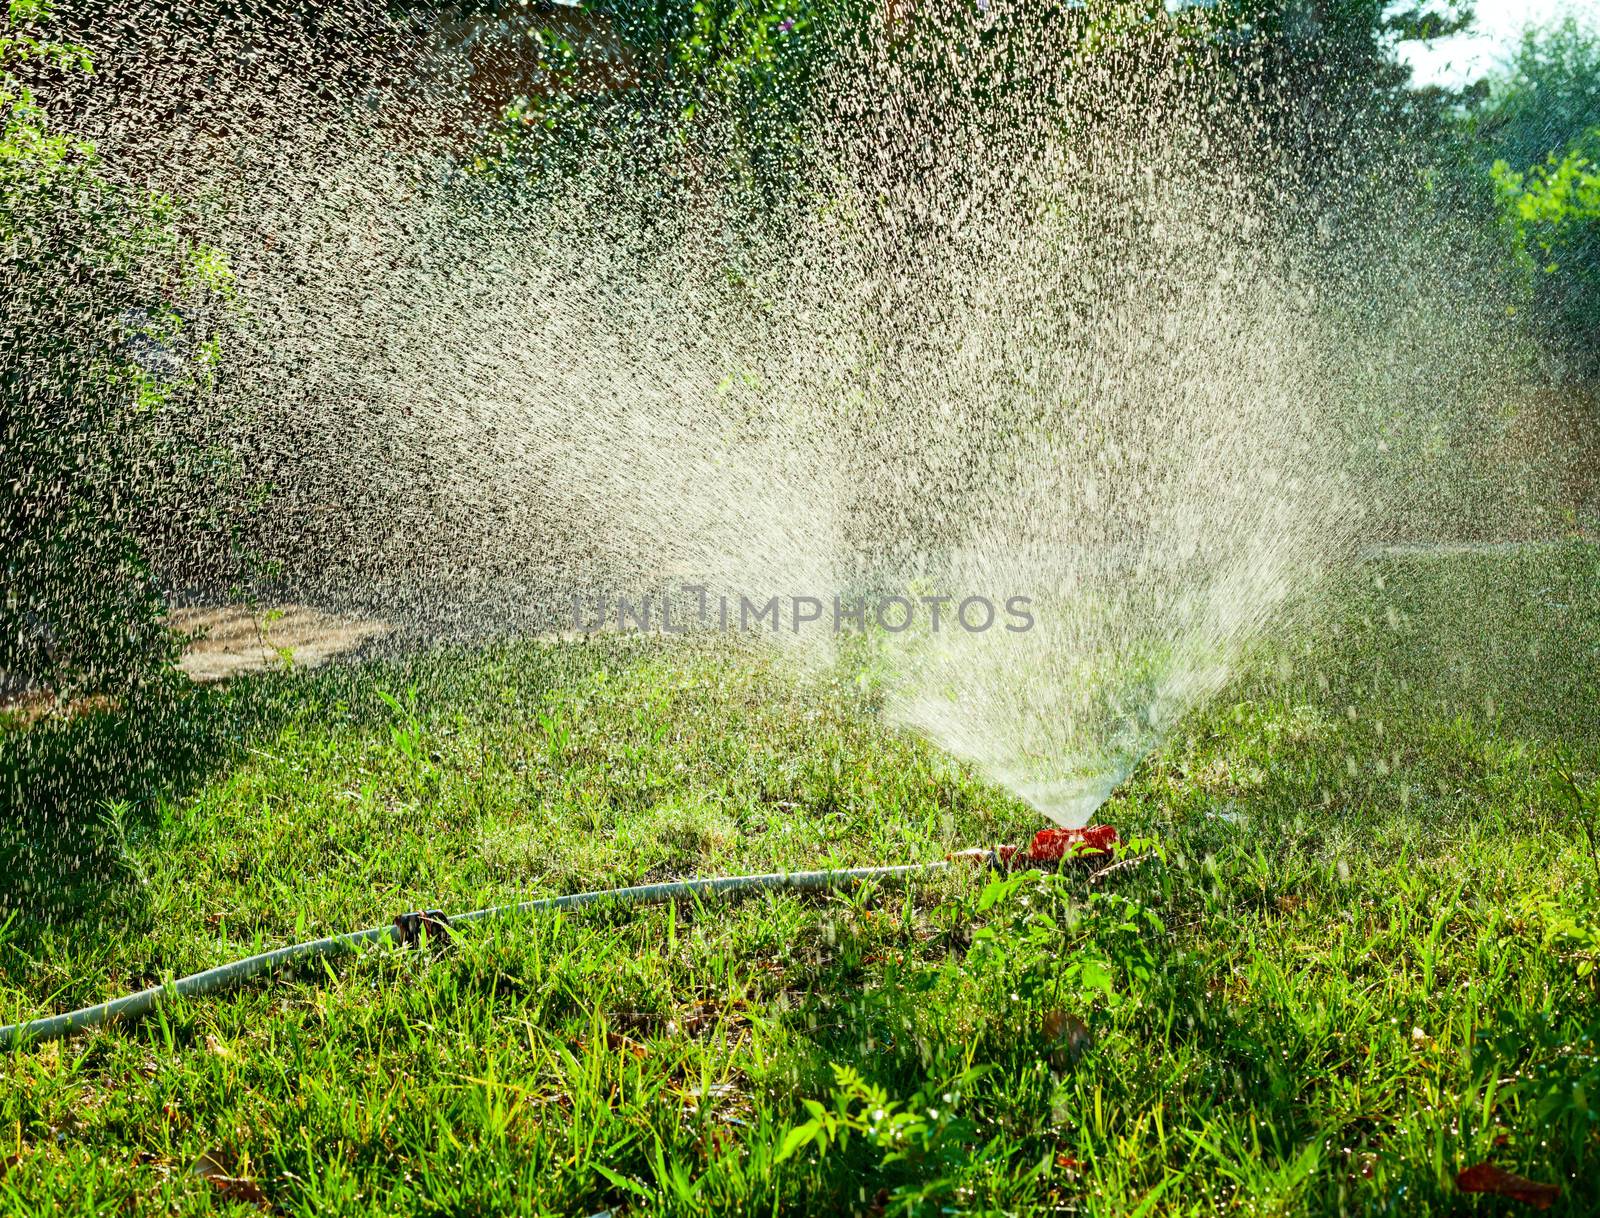 Lawn irrigation by naumoid